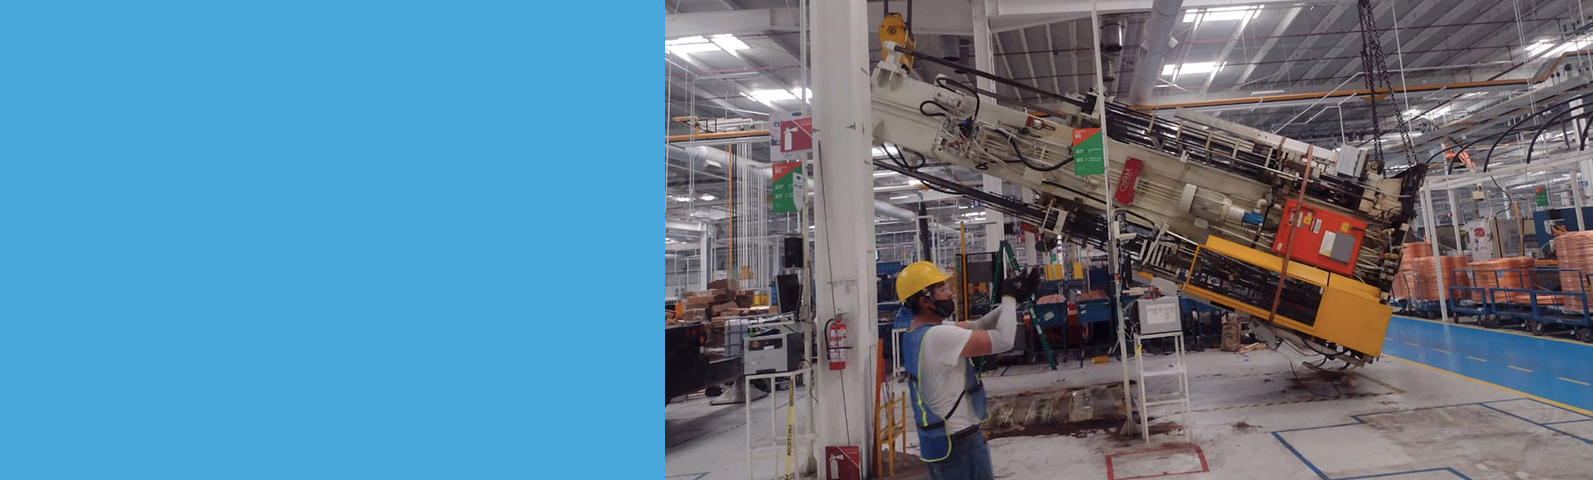 Maniobras de equipos industriales en México